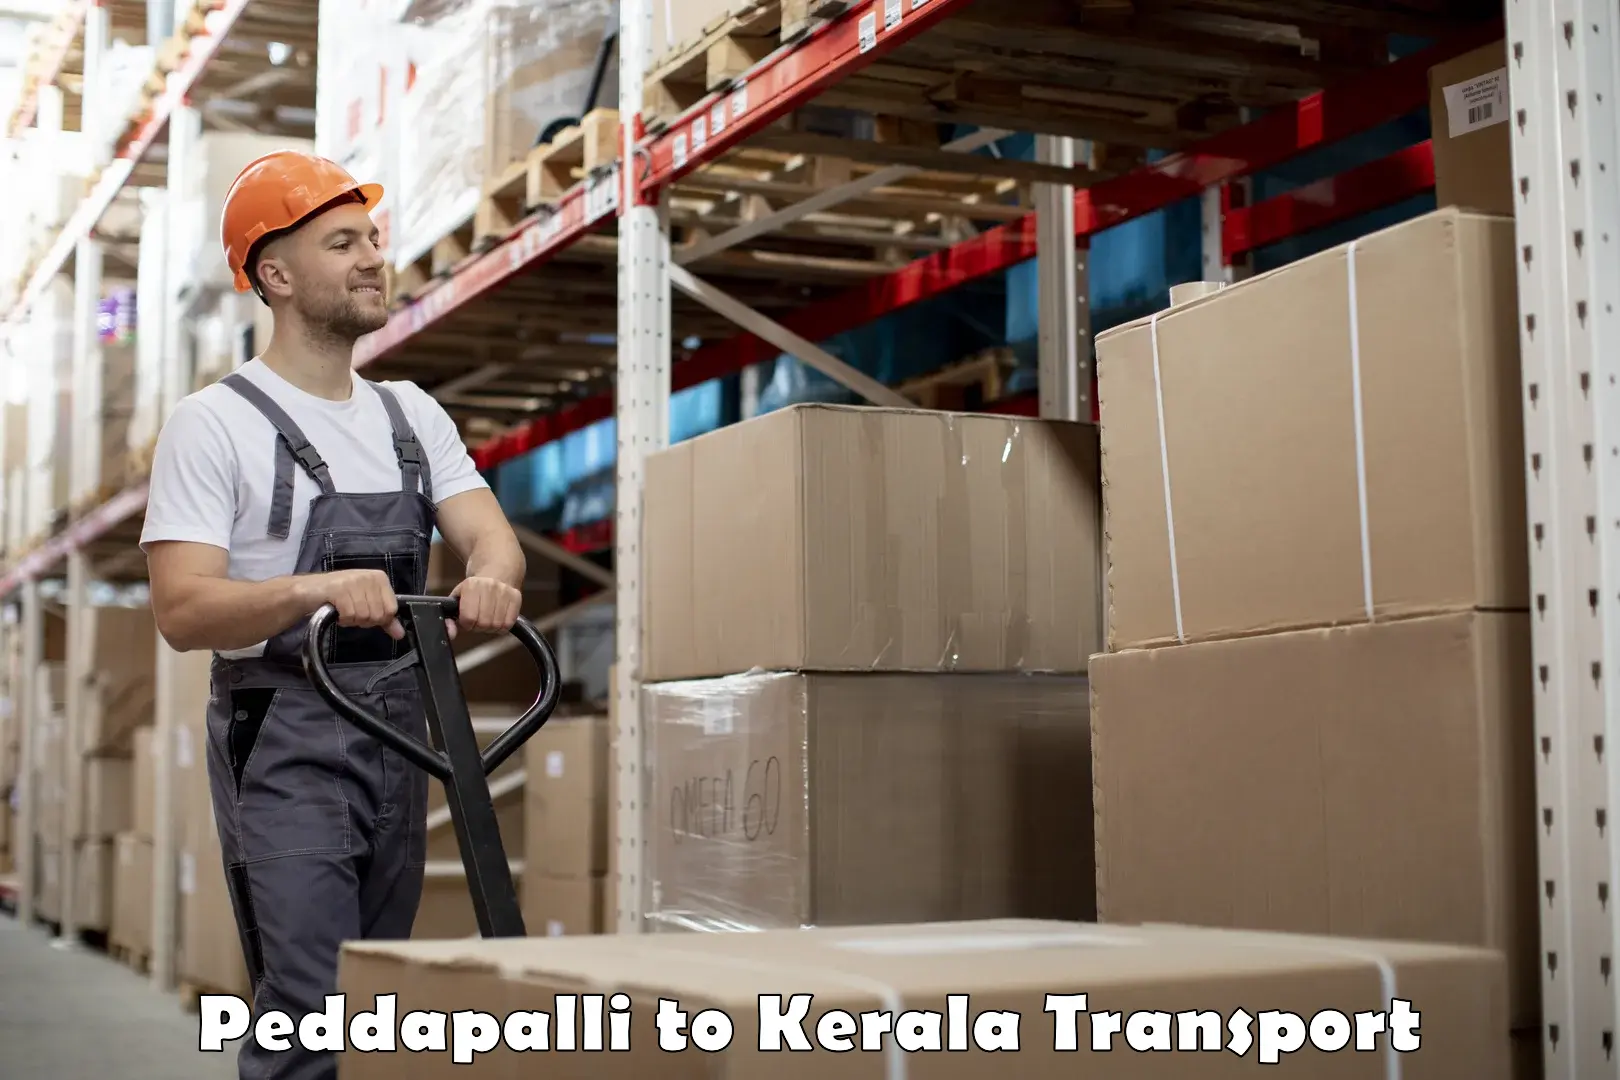 Online transport service Peddapalli to Kodungallur